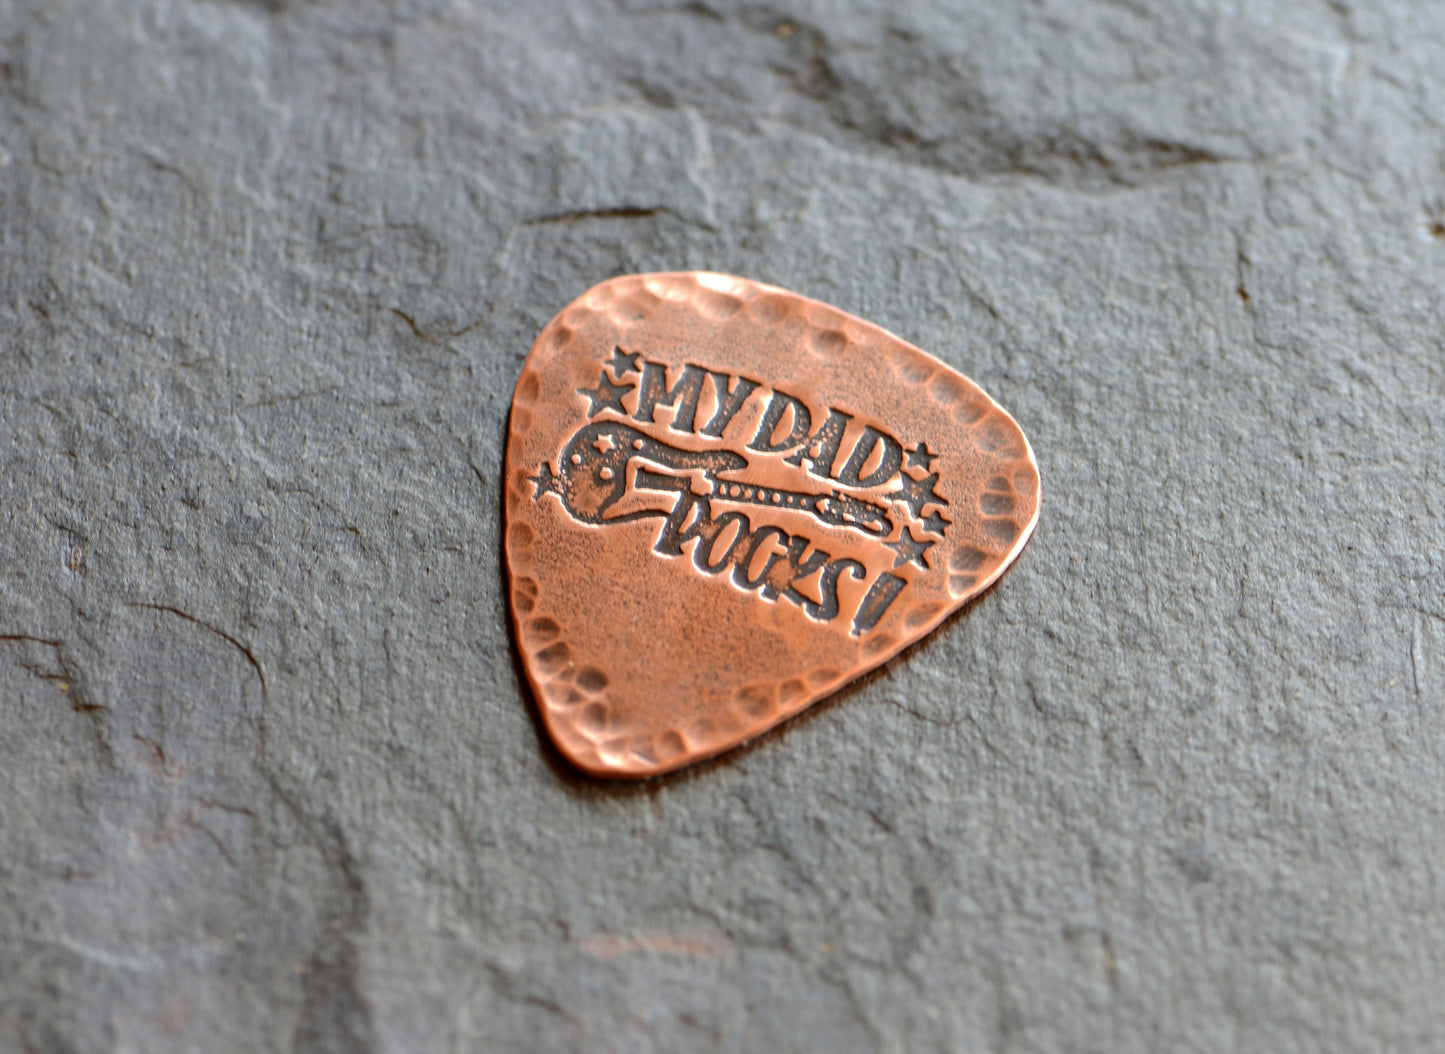 Guitar pick in rustic copper